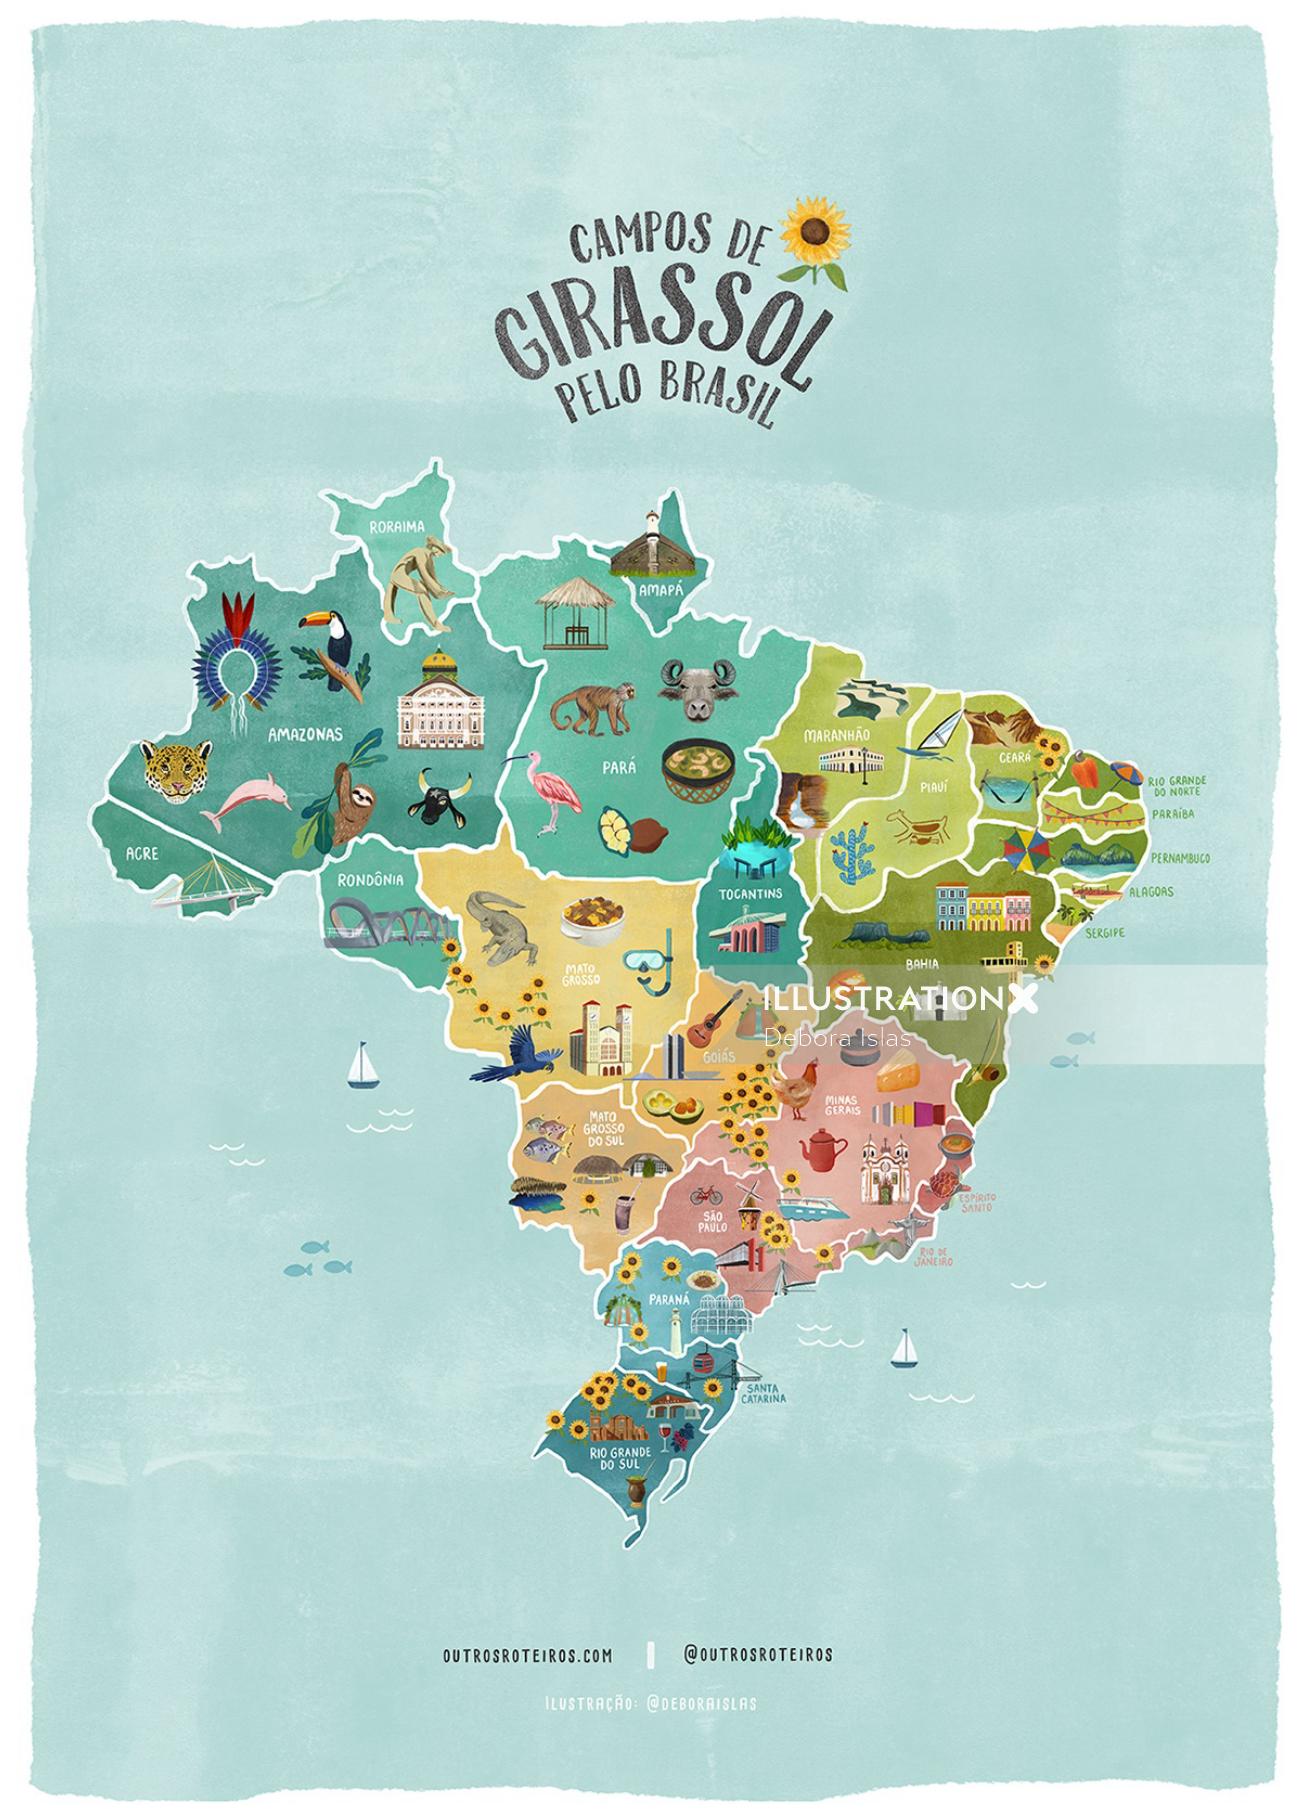 Campos De Girassol PeloBrasil地図イラスト